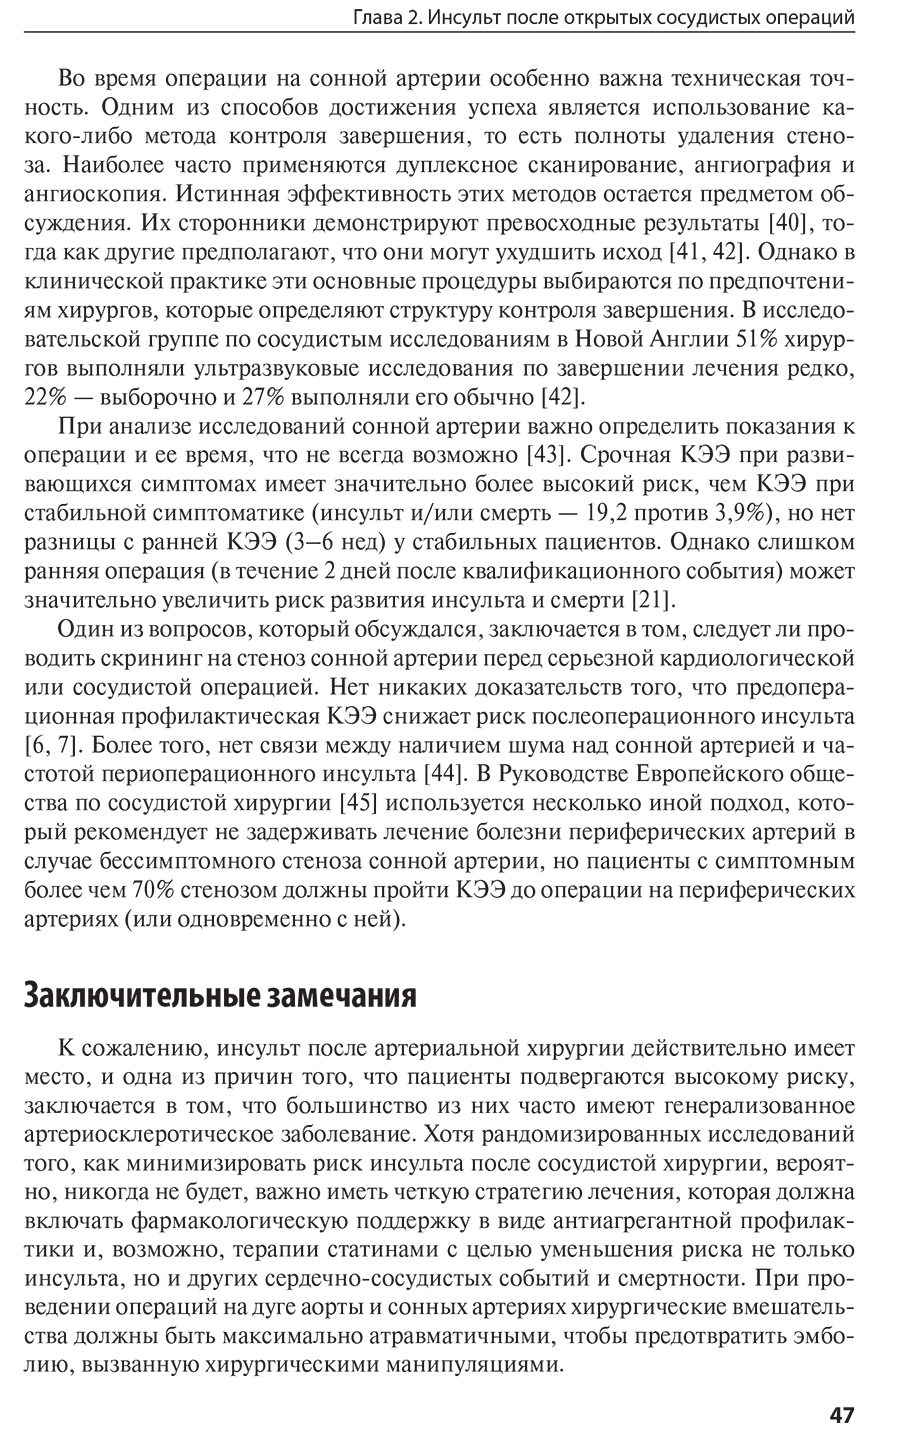 Пример страницы из книги "Ятрогенный инсульт: руководство для врачей" - А. Цискаридзе